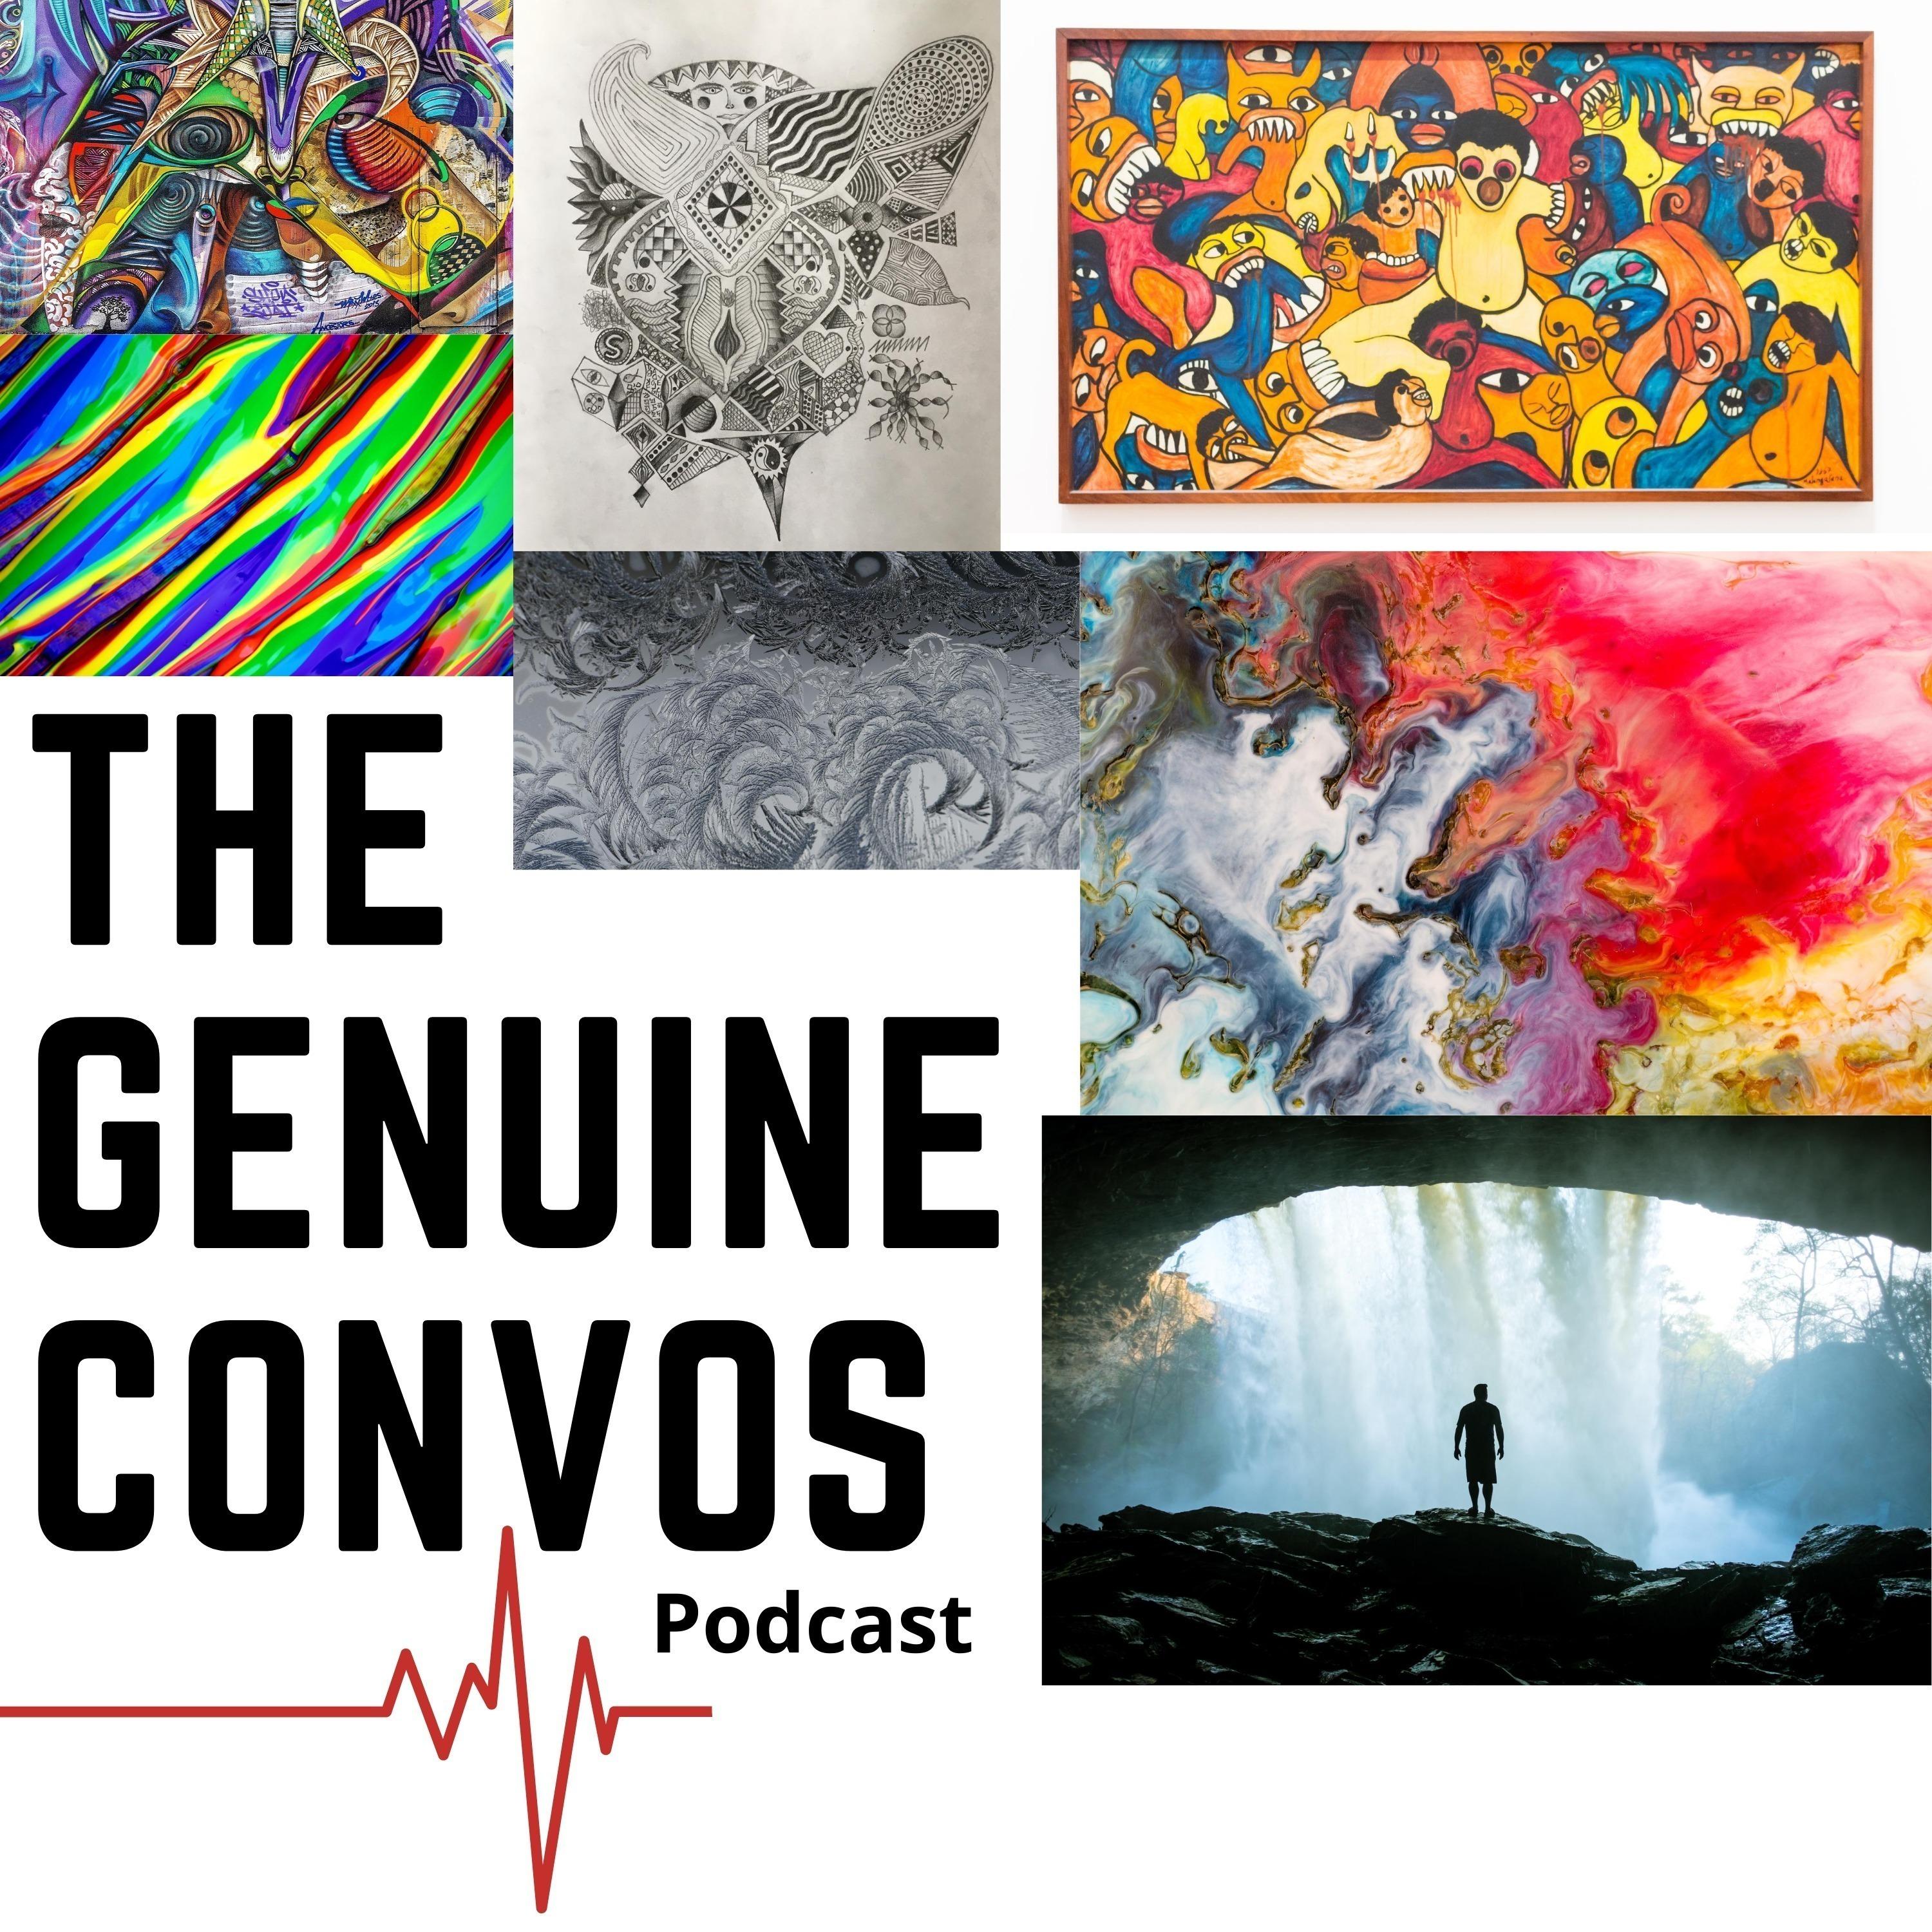 The Genuine Convos podcast